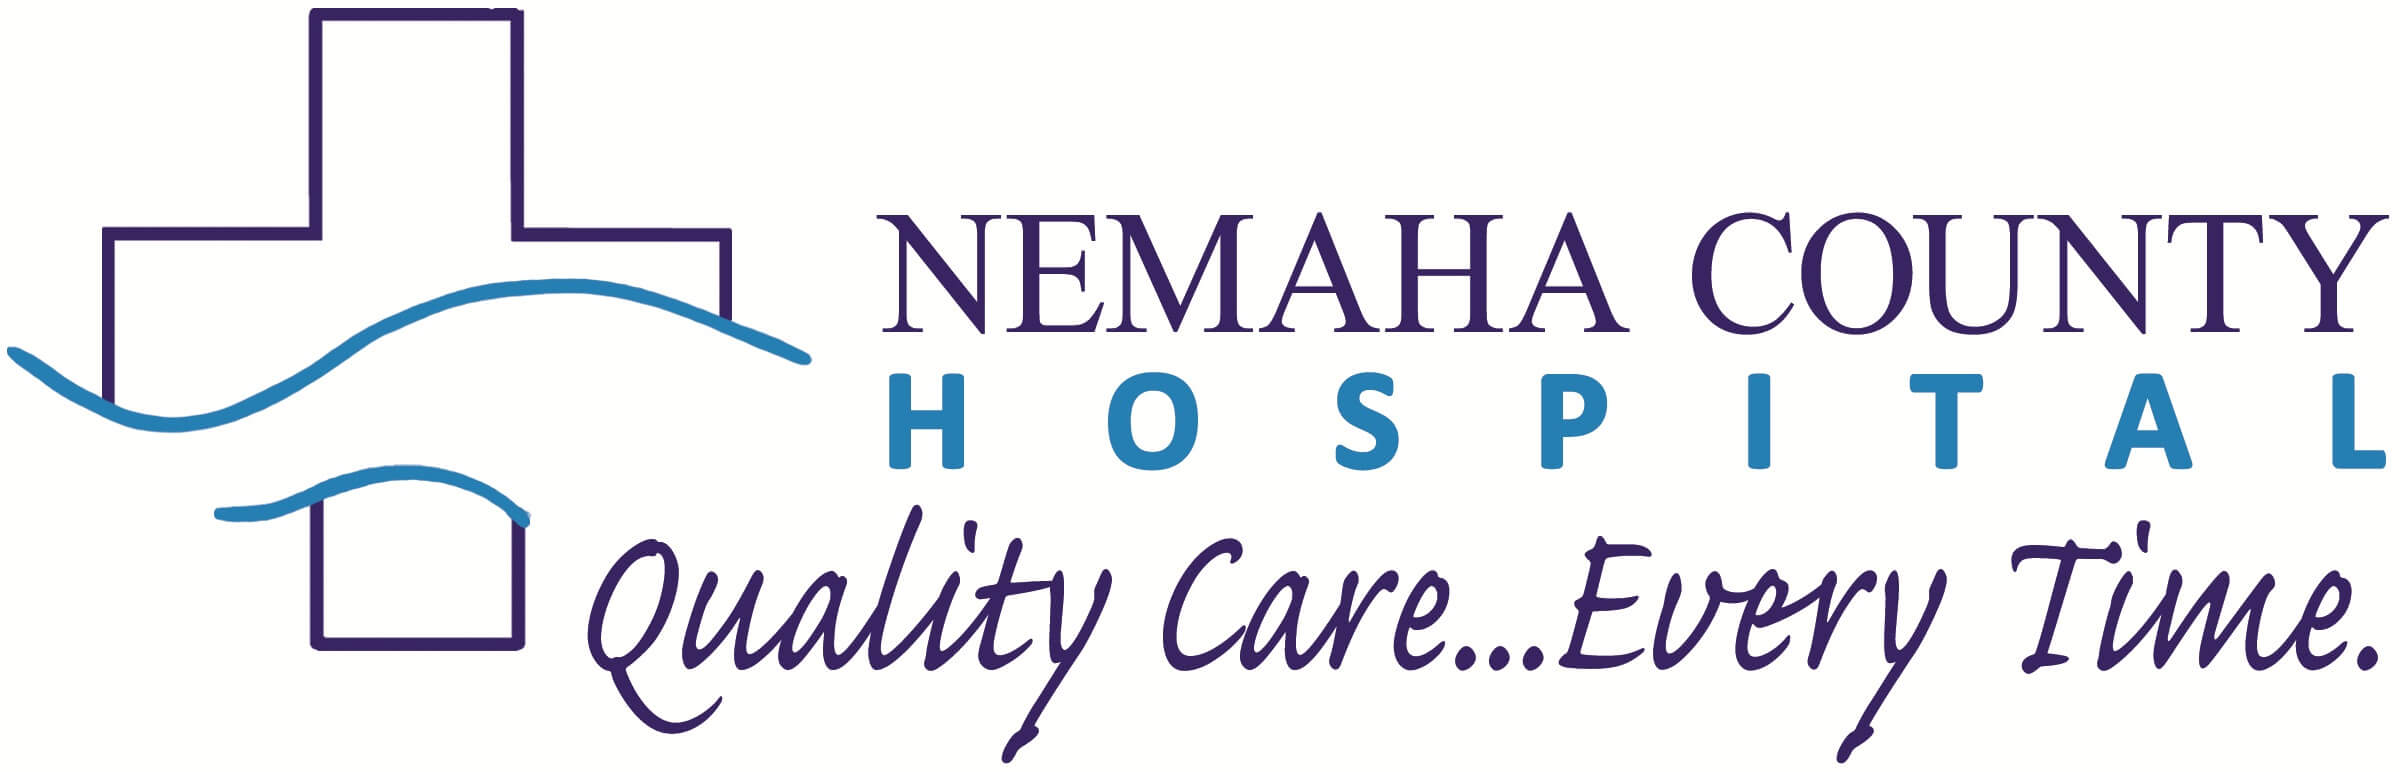 Nemaha County Hospital Logo